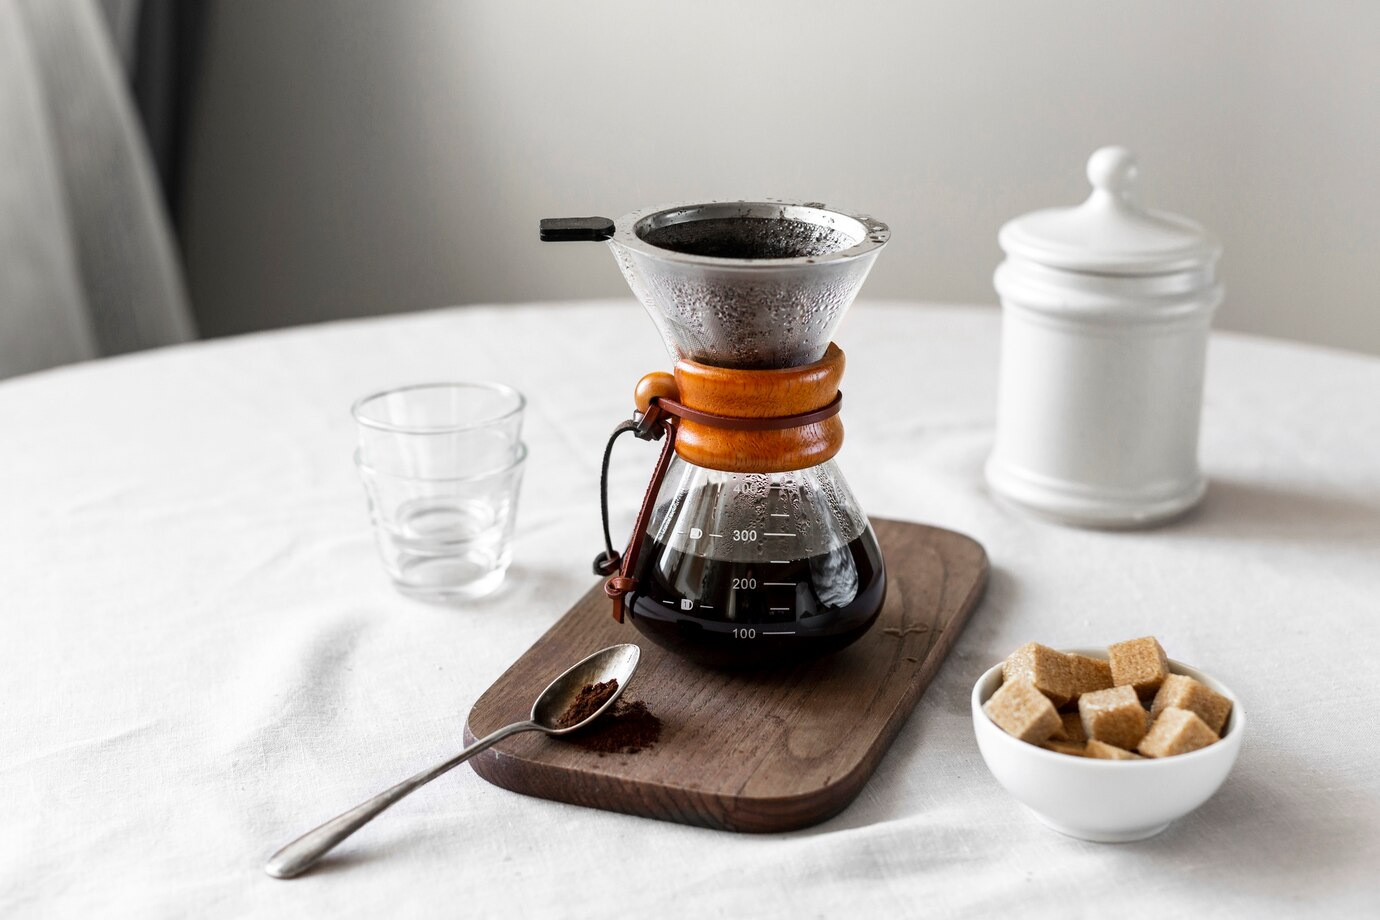 Как устроить мини-кофейню дома? Часть 2: рекомендации для продвинутых кофеманов